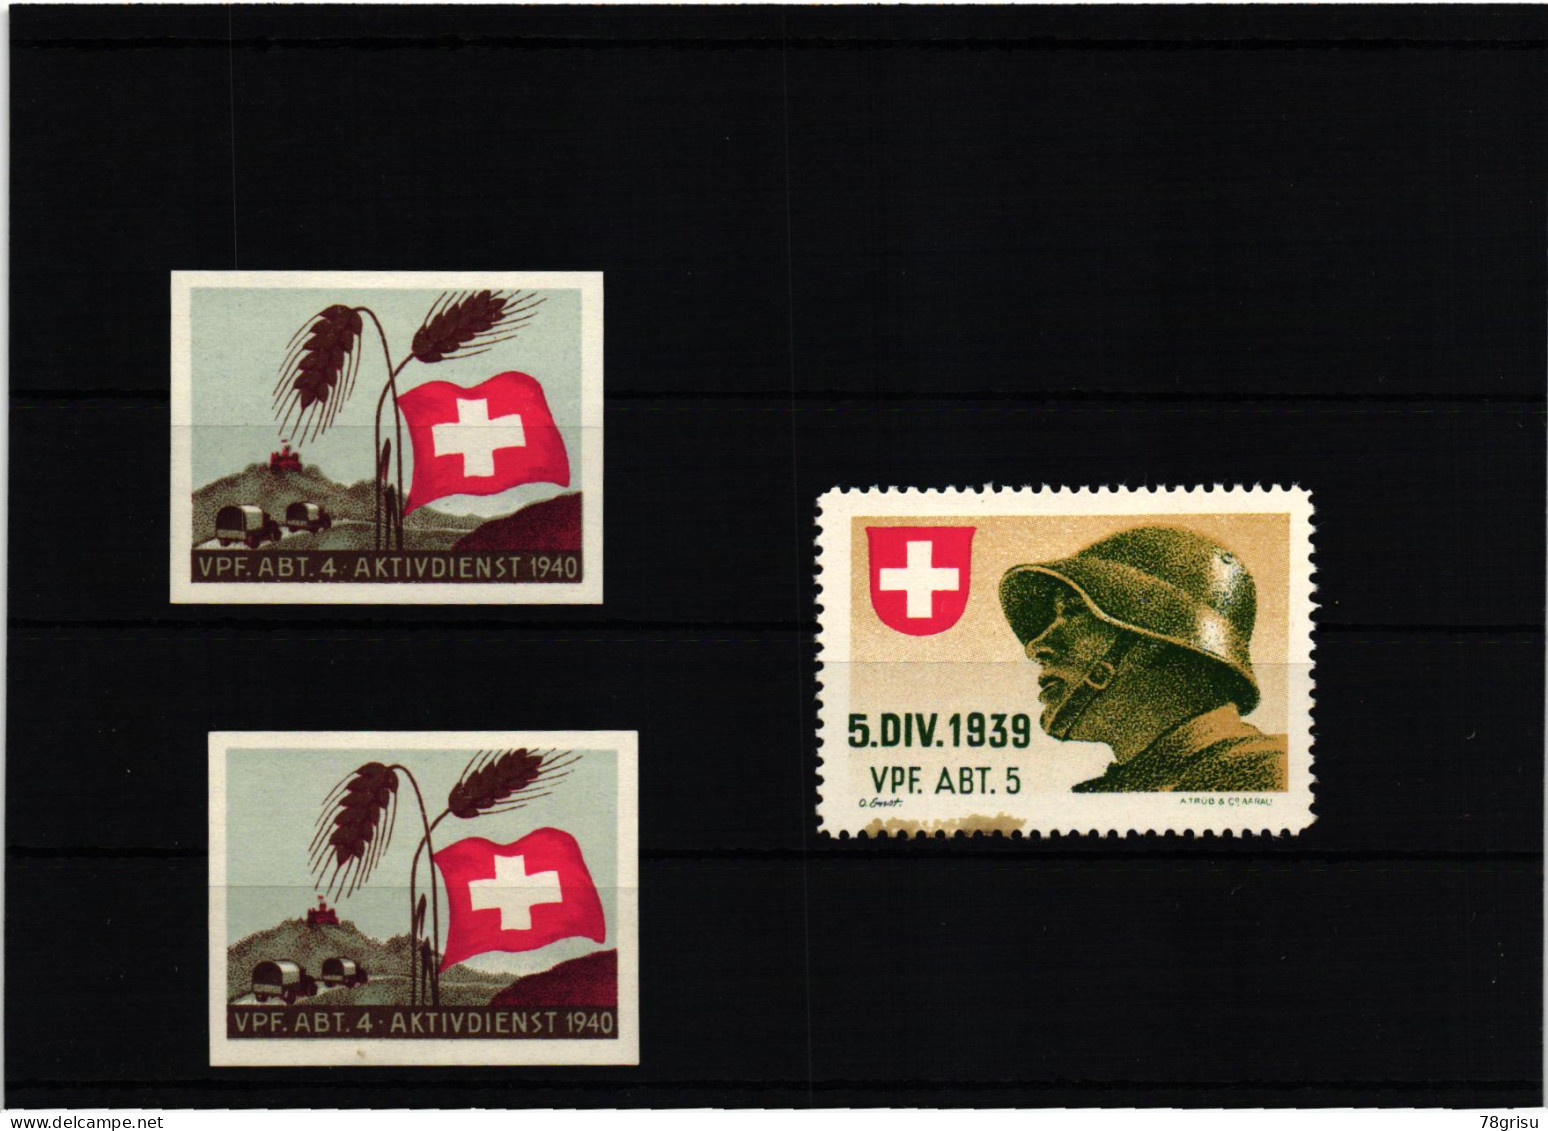 Schweiz Soldatenmarken, Vpf.Abt. Verpflegungs Abteilung Kohldampf 1939 1940 - Vignettes